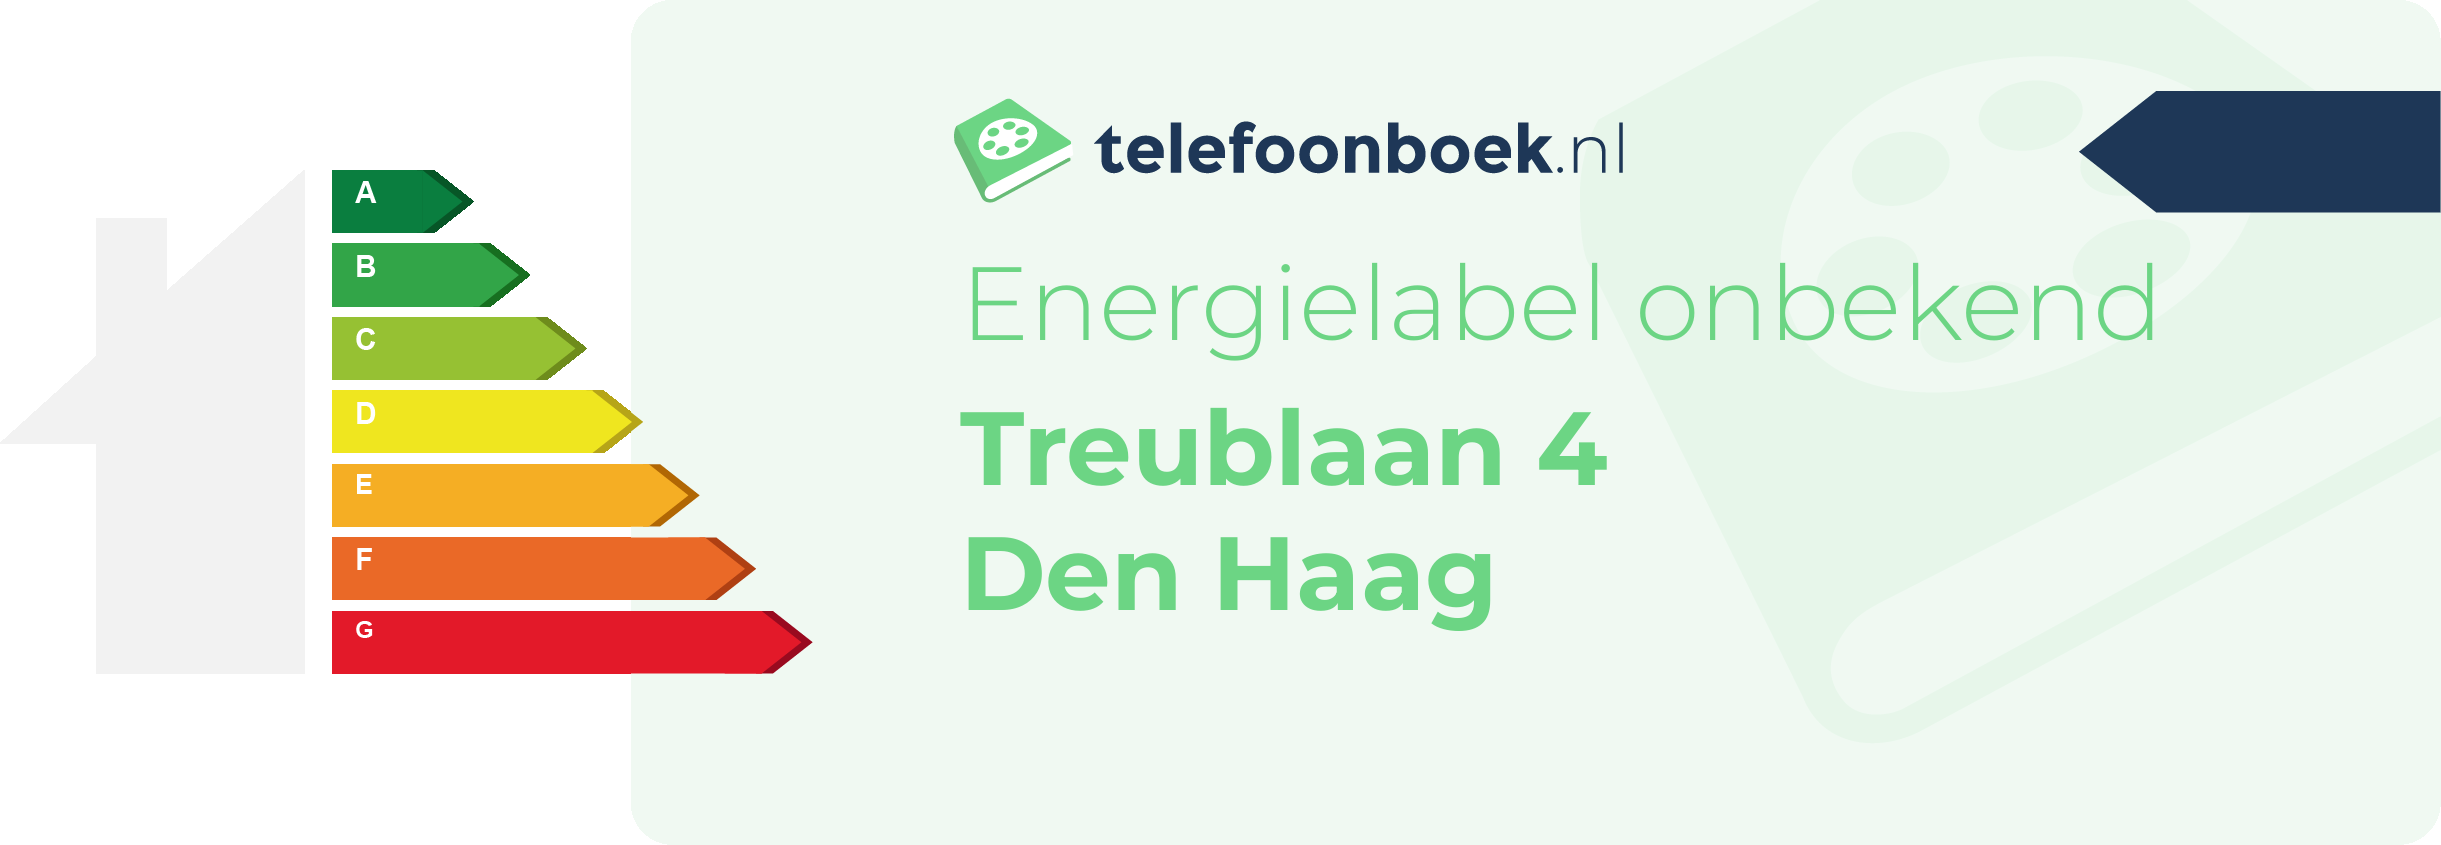 Energielabel Treublaan 4 Den Haag